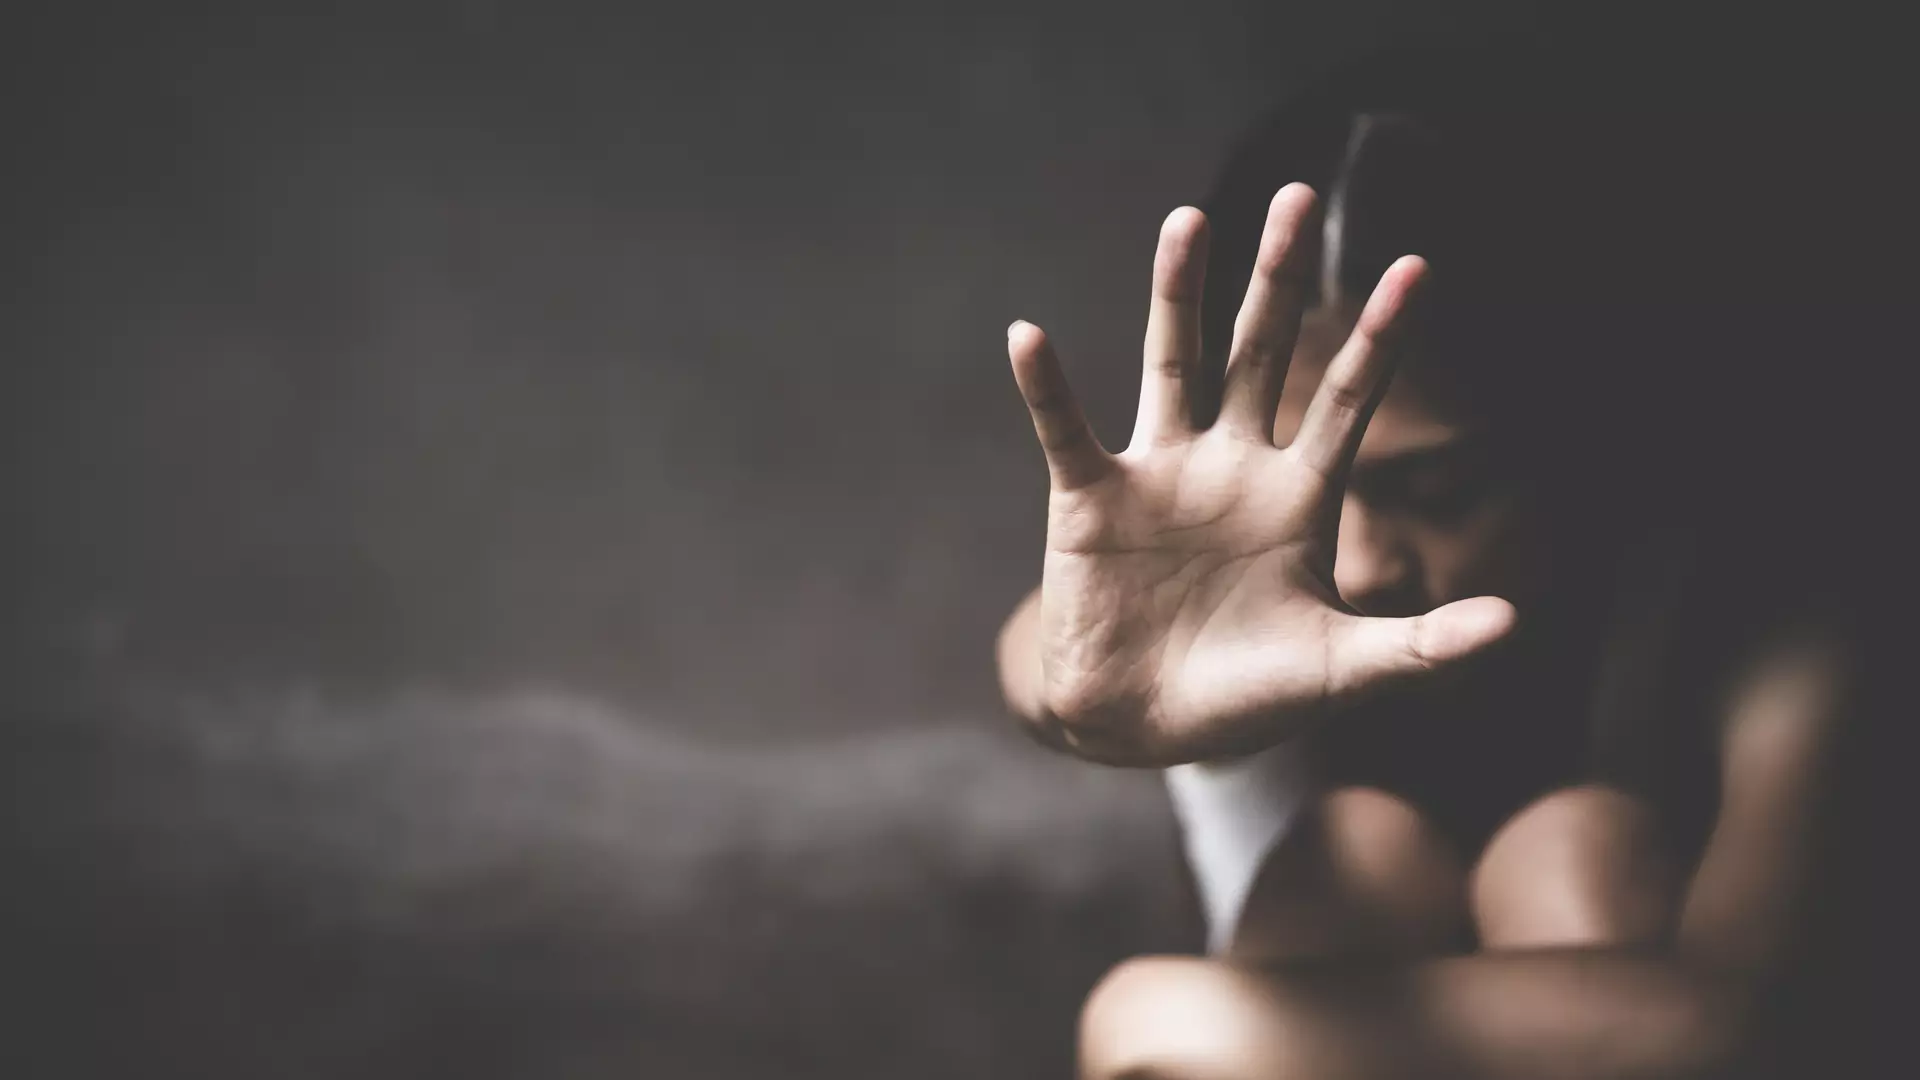 Powraca temat przemocy seksualnej w Indiach. 16-latka zeznaje, że została zgwałcona przez setki mężczyzn